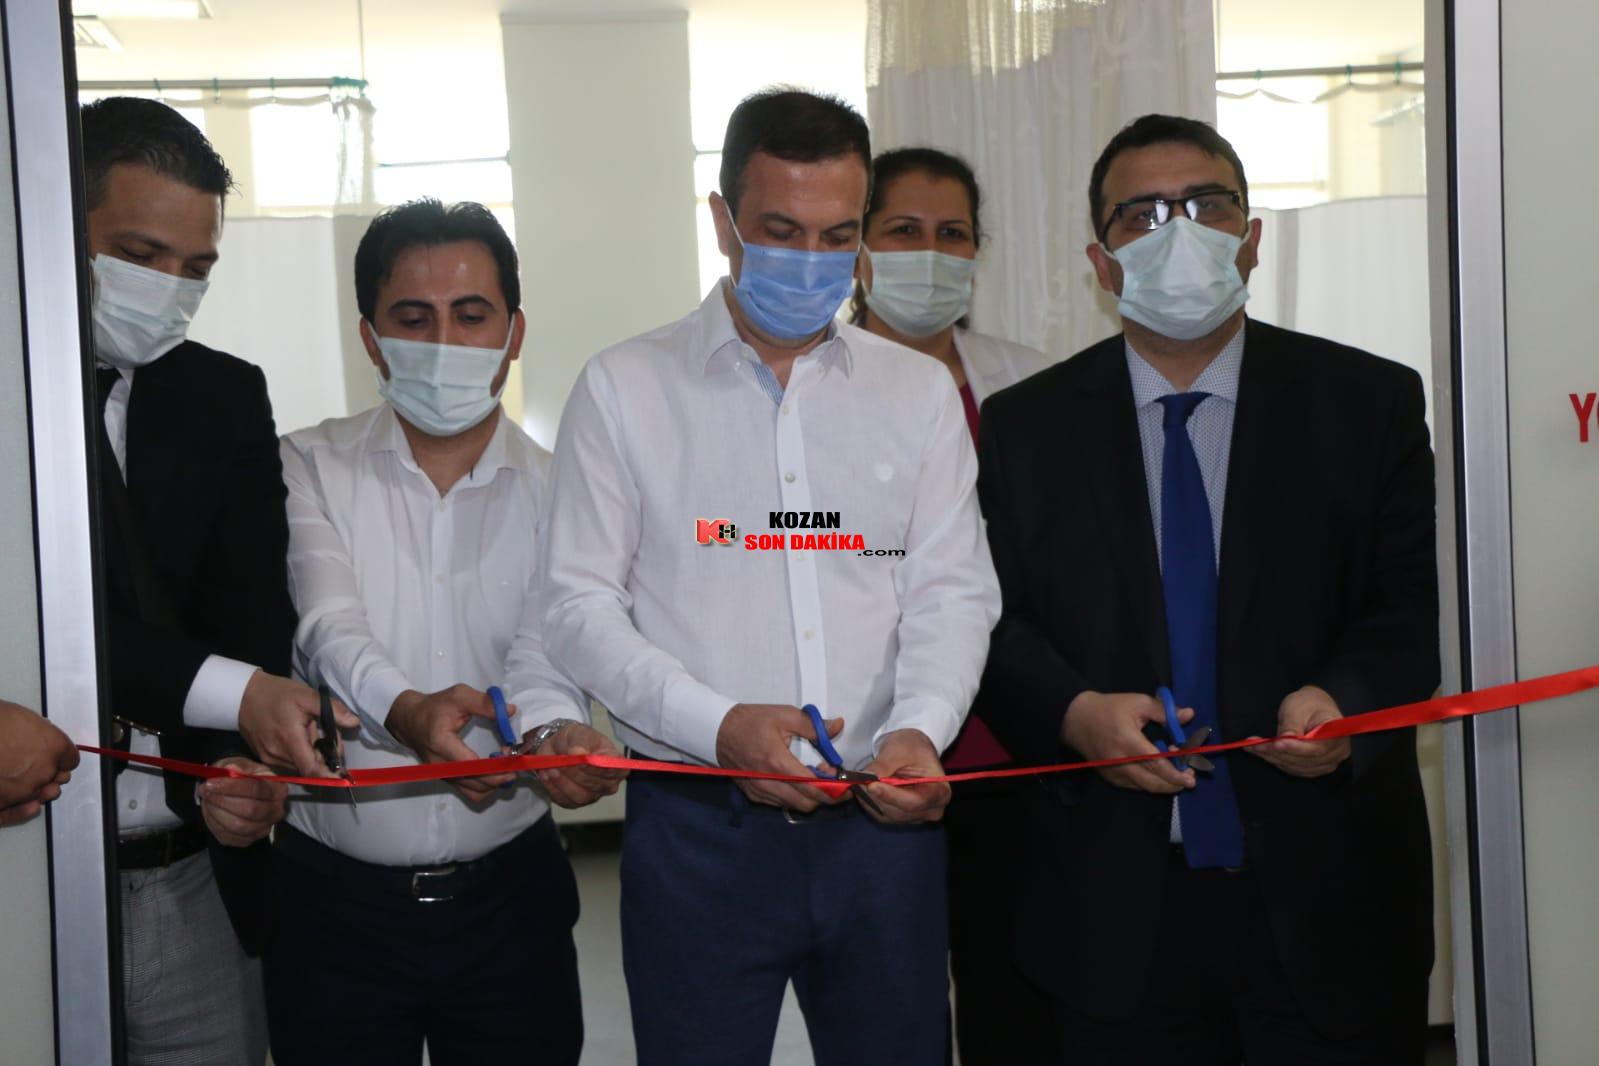 Kozan Devlet Hastanesine yeni 6 yataklı yoğun bakım ünitesi açıldı.